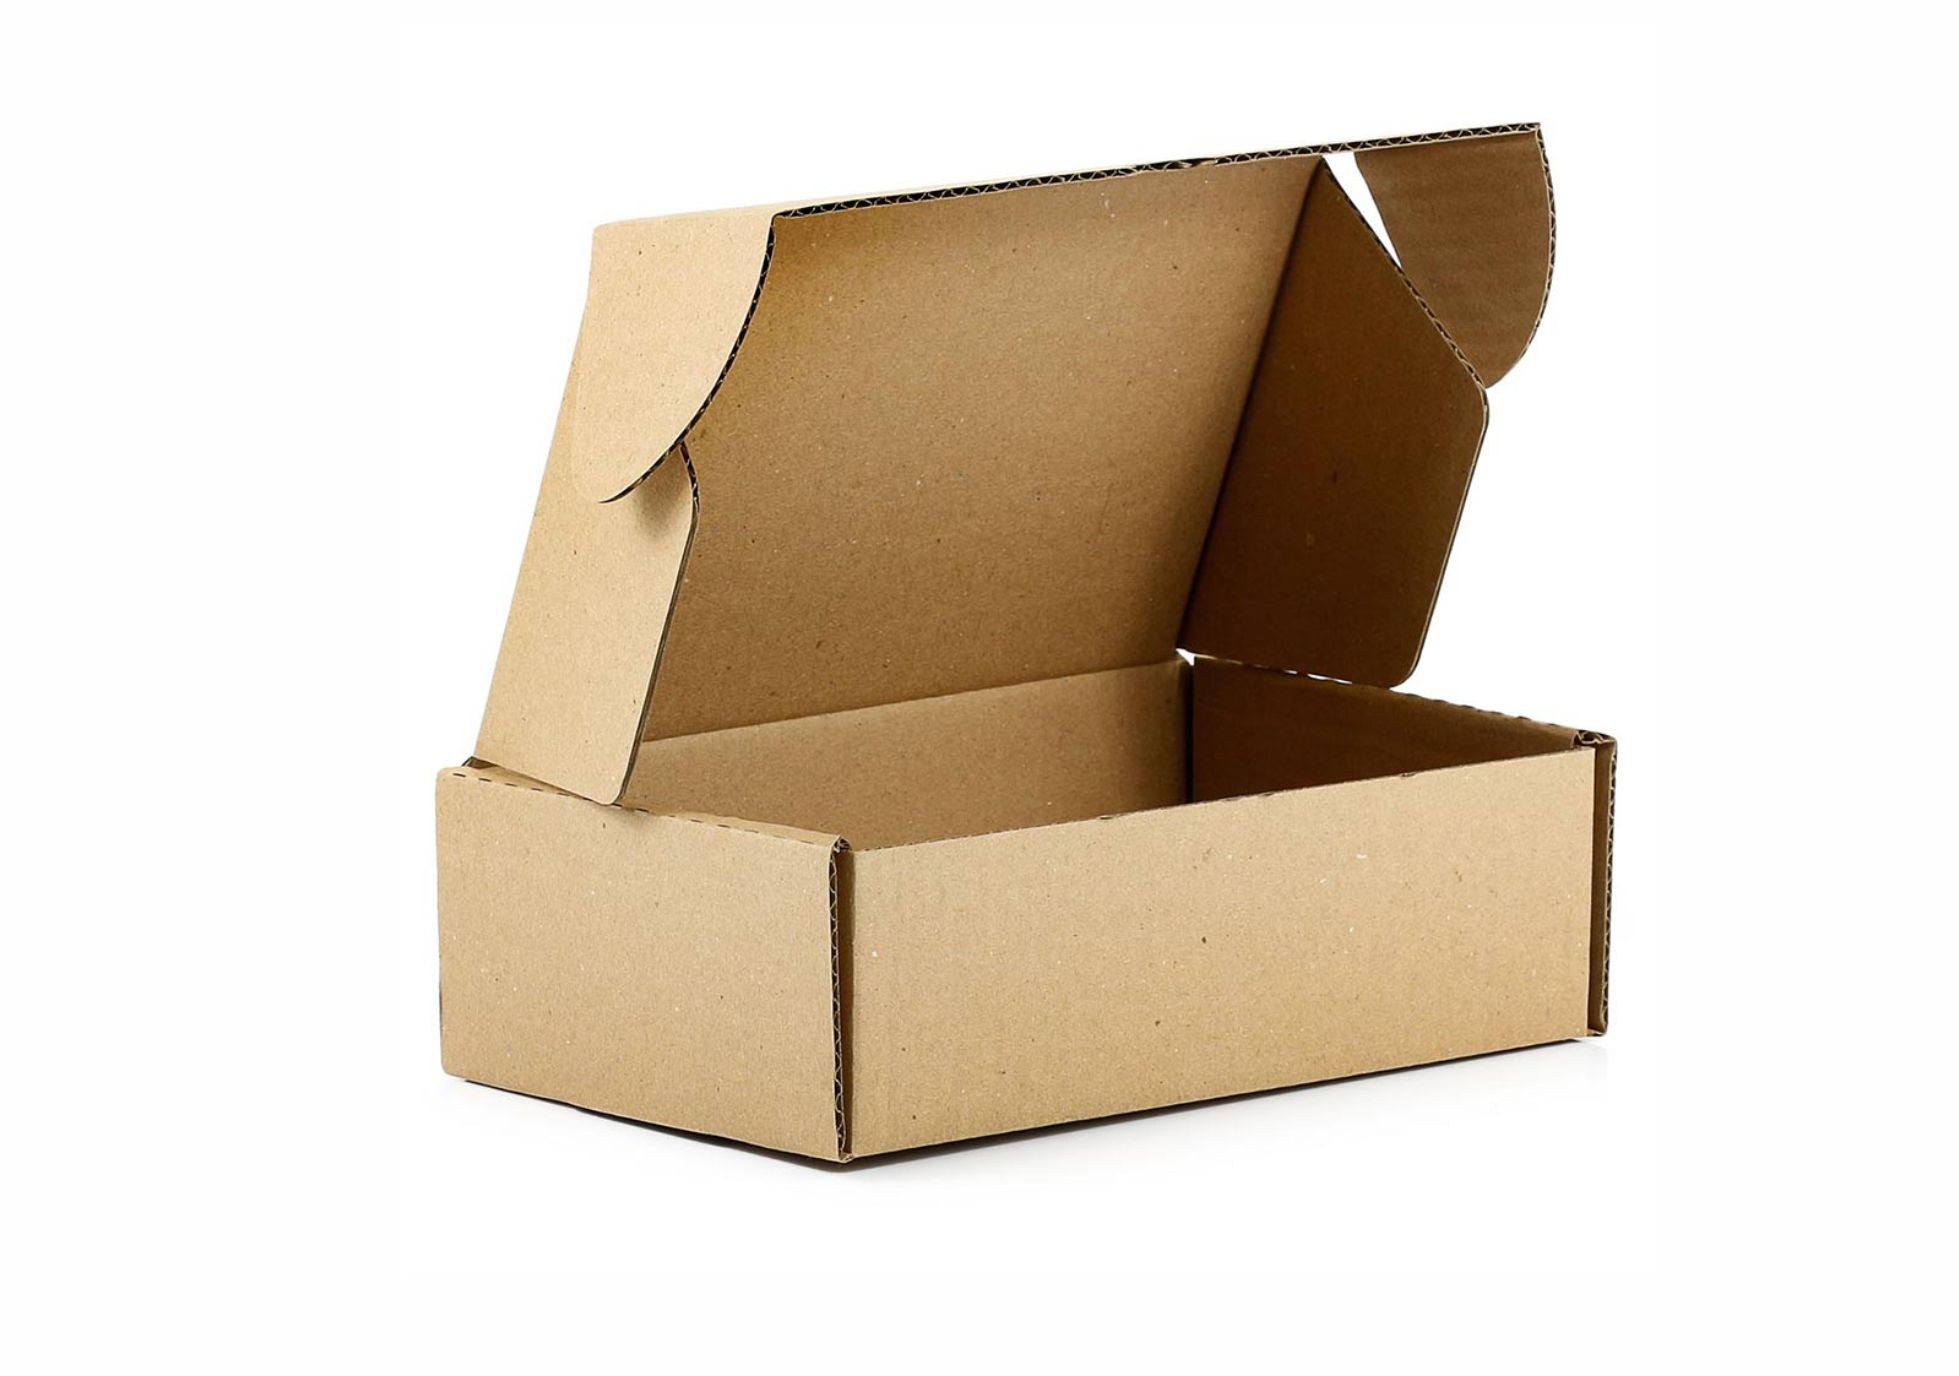 Caixa de papelão para cesta básica preço - 4161-1263 - FENIX